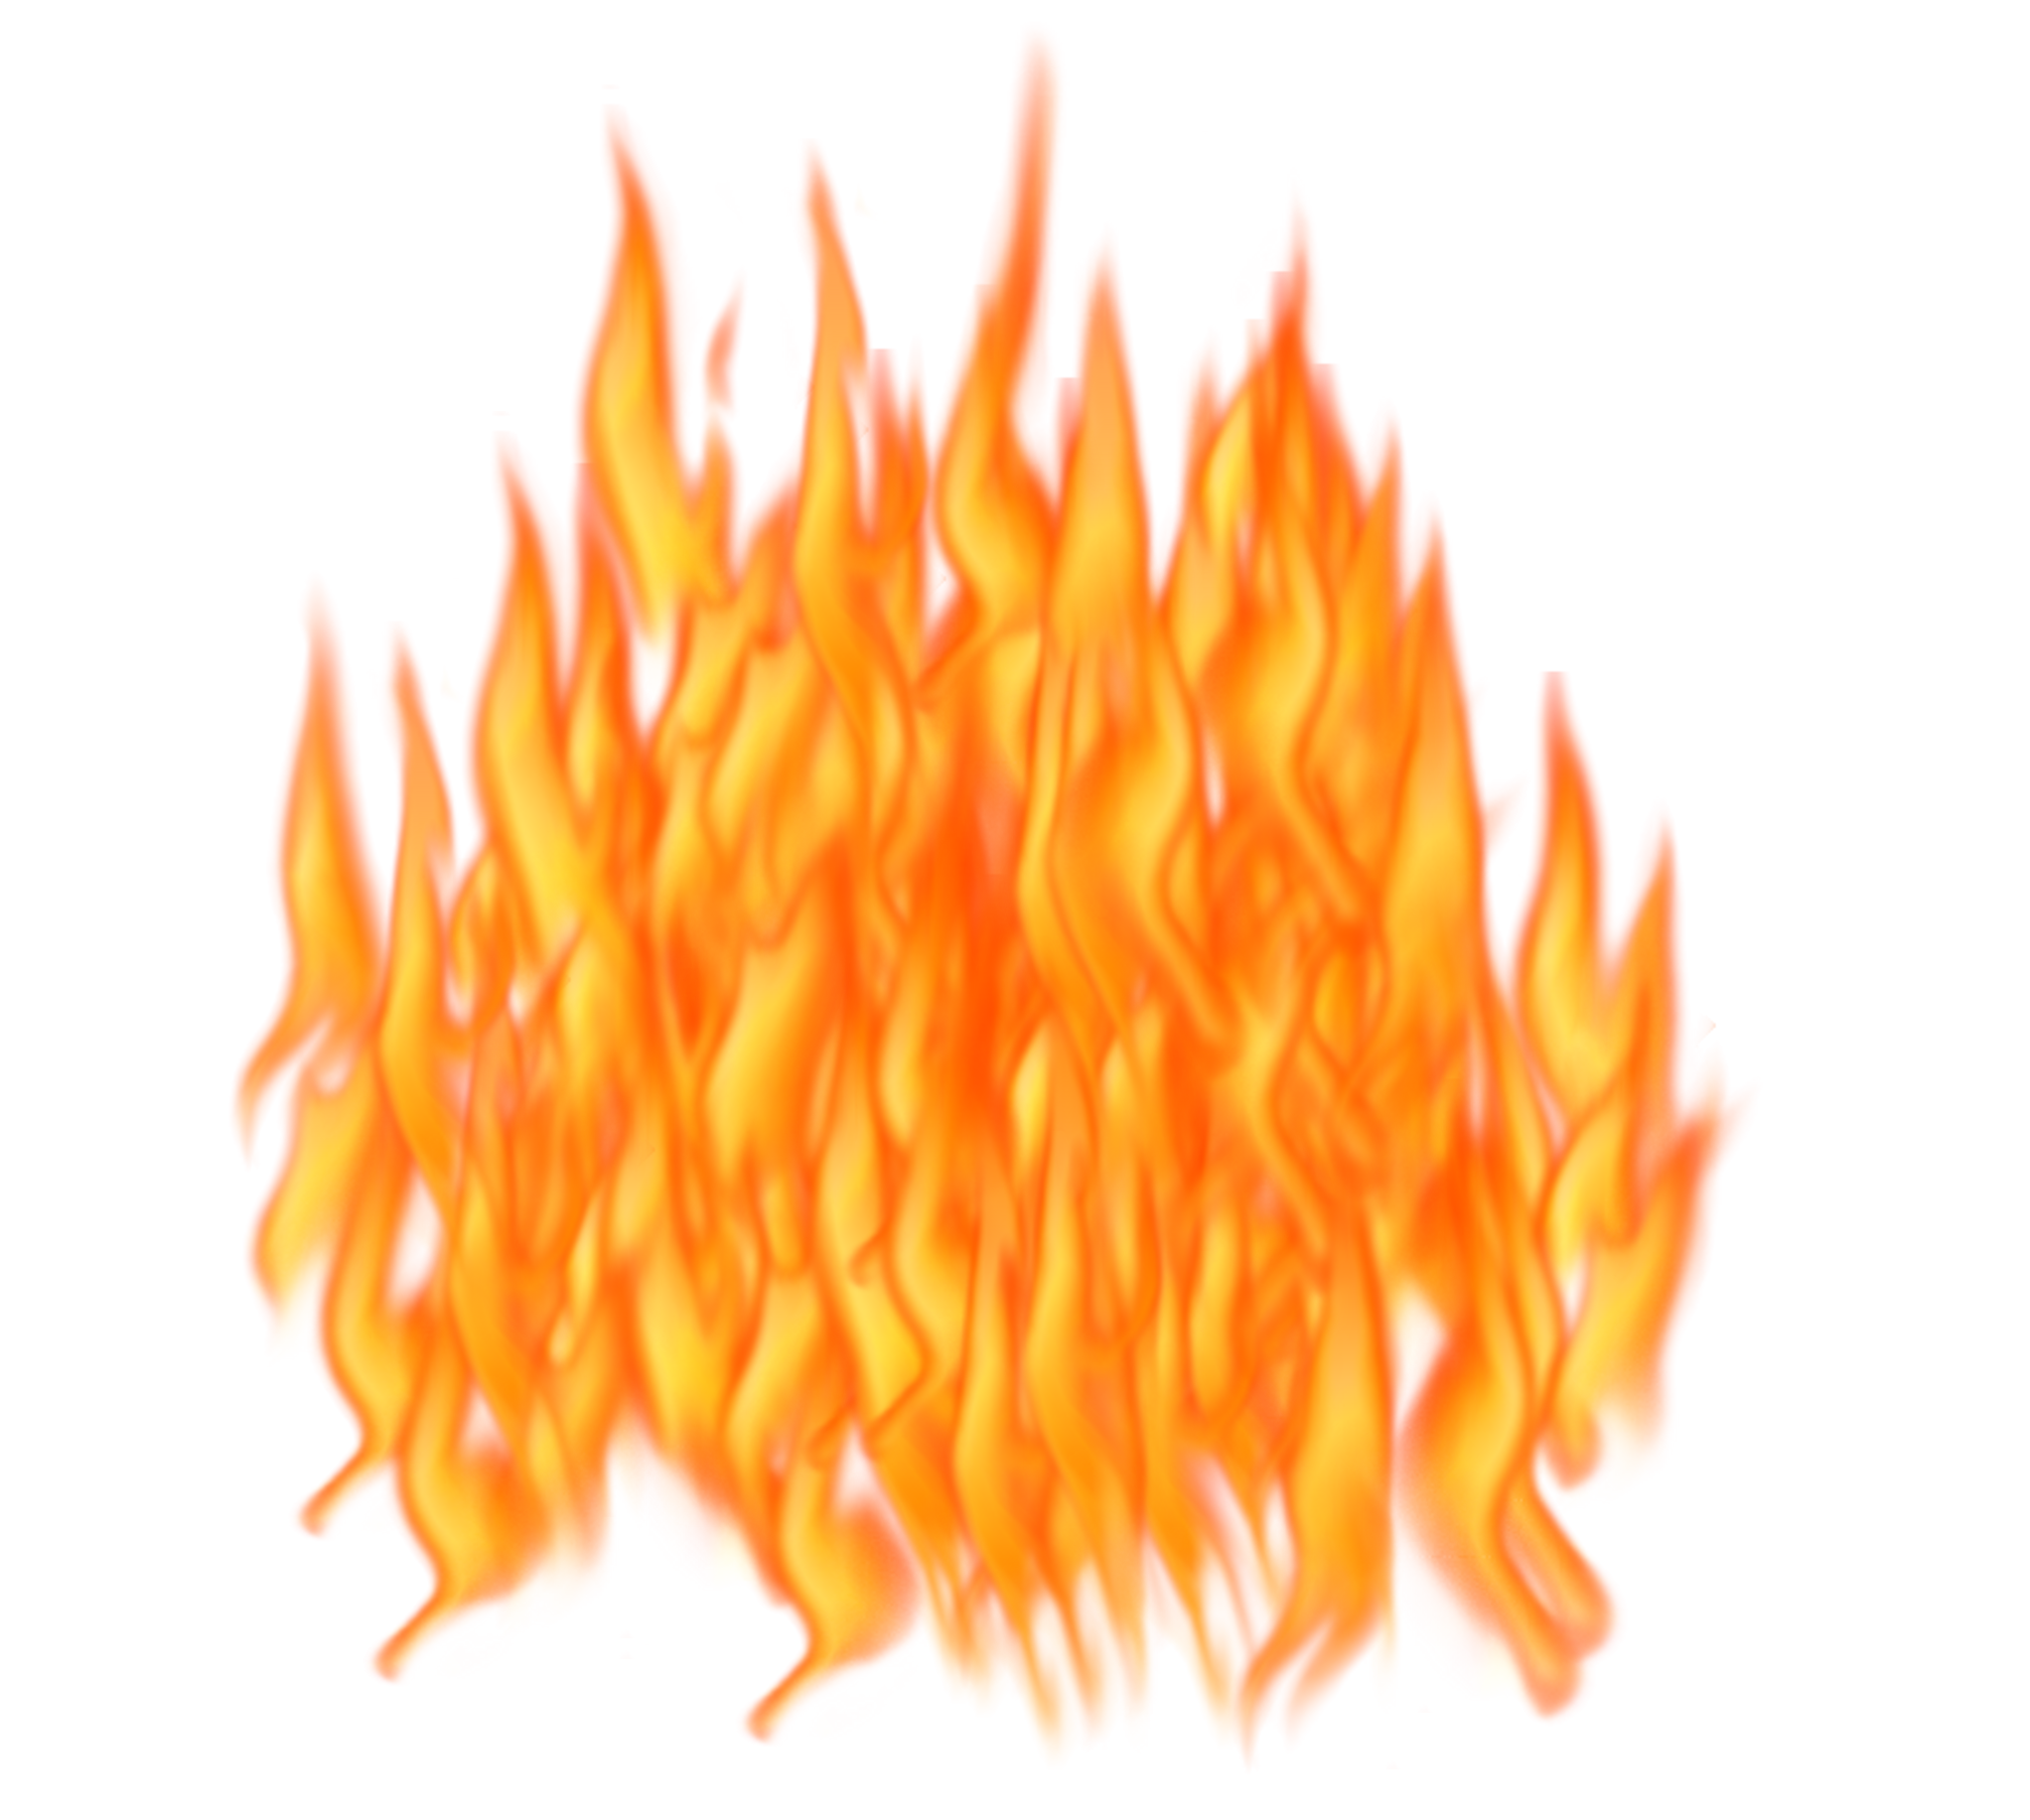 Hình ảnh đám cháy (Fire clipart): Được thiết kế với nhiều kiểu dáng và màu sắc khác nhau, hình ảnh đám cháy sẽ làm bạn phấn khích và kích động. Hãy khám phá thế giới của những lửa thiêu đốt bằng các bức tranh cắt dán này và tạo nên những tác phẩm độc đáo của riêng bạn.